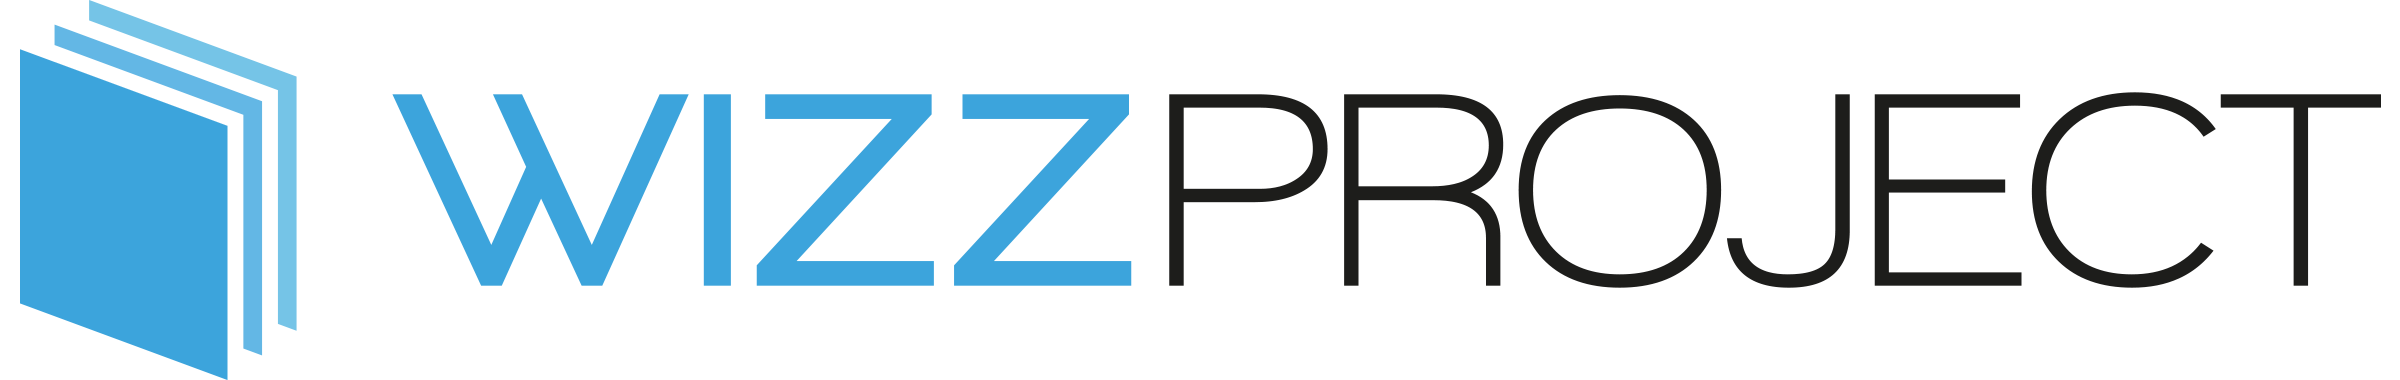 logo WizzProject